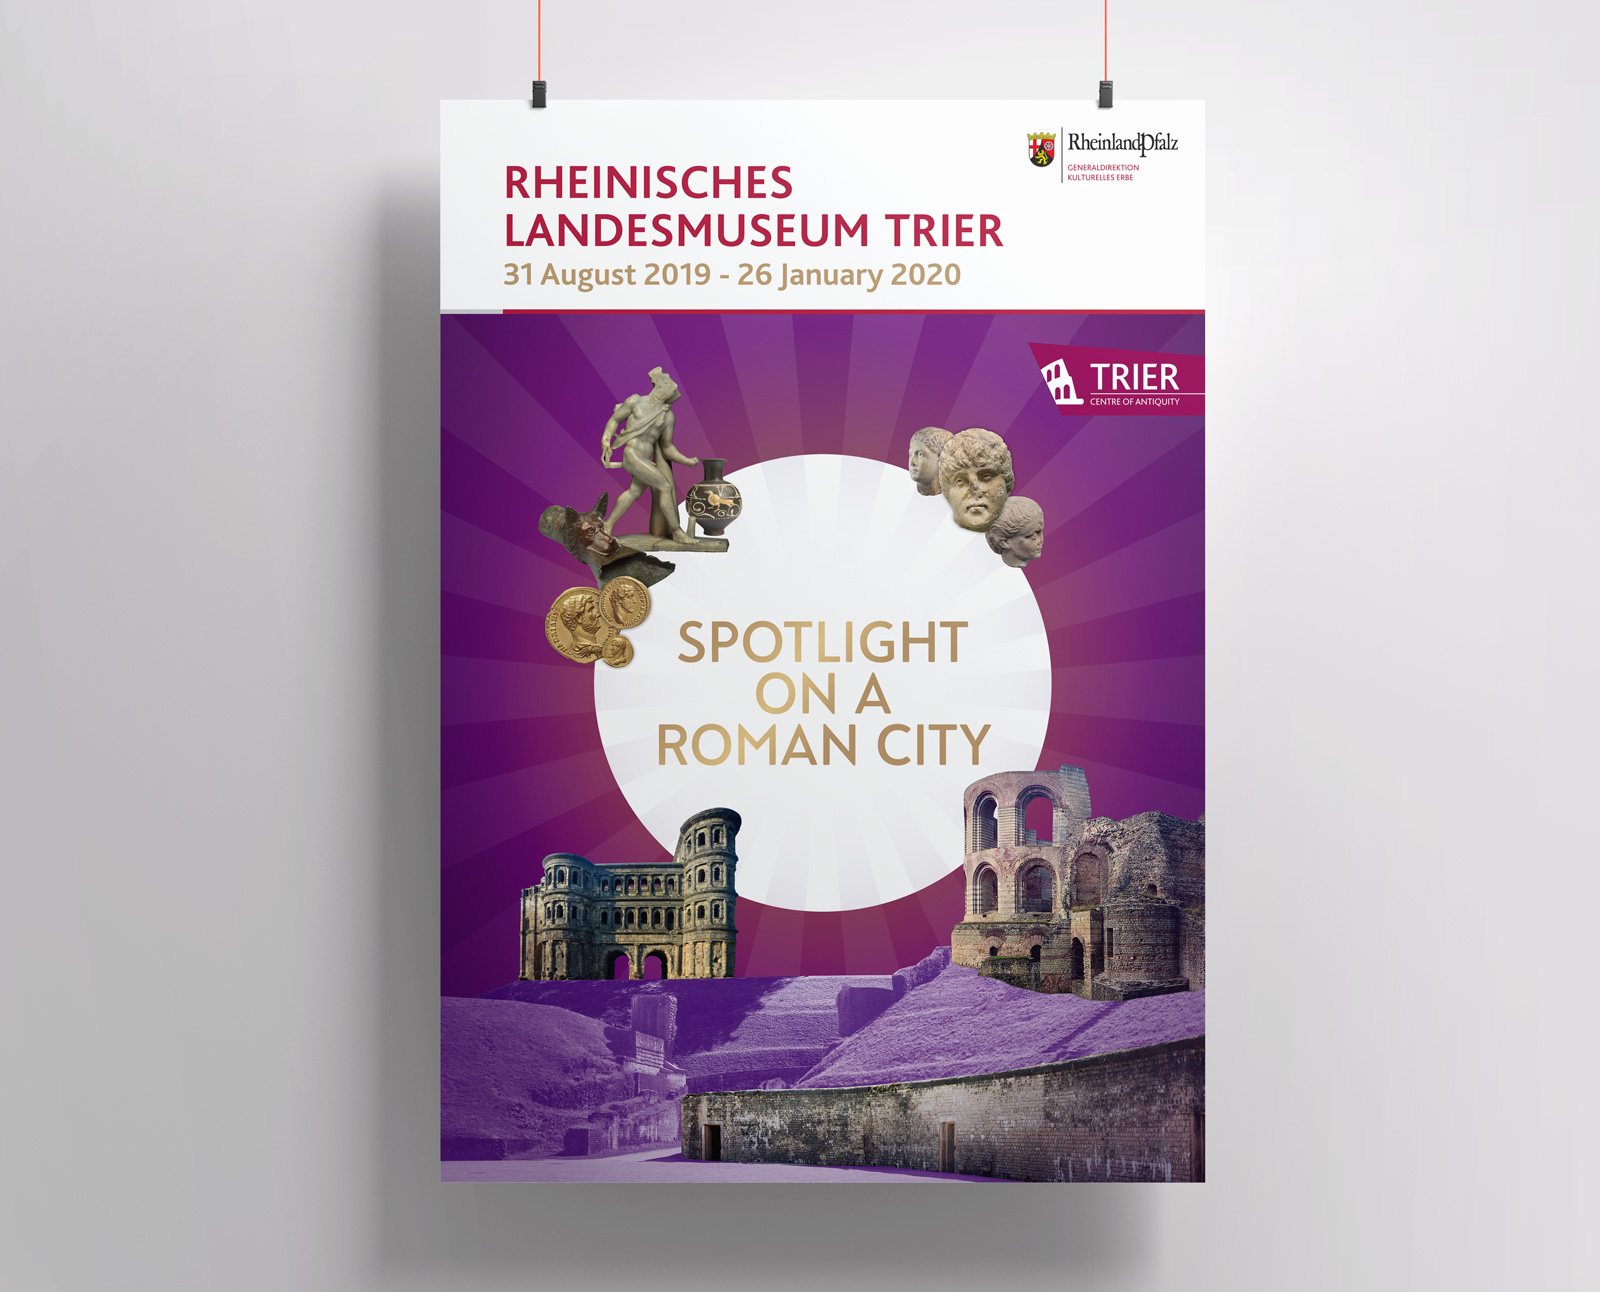 Plakat für die Ausstellung "SPOT AN!" des Rheinischen Landesmuseums